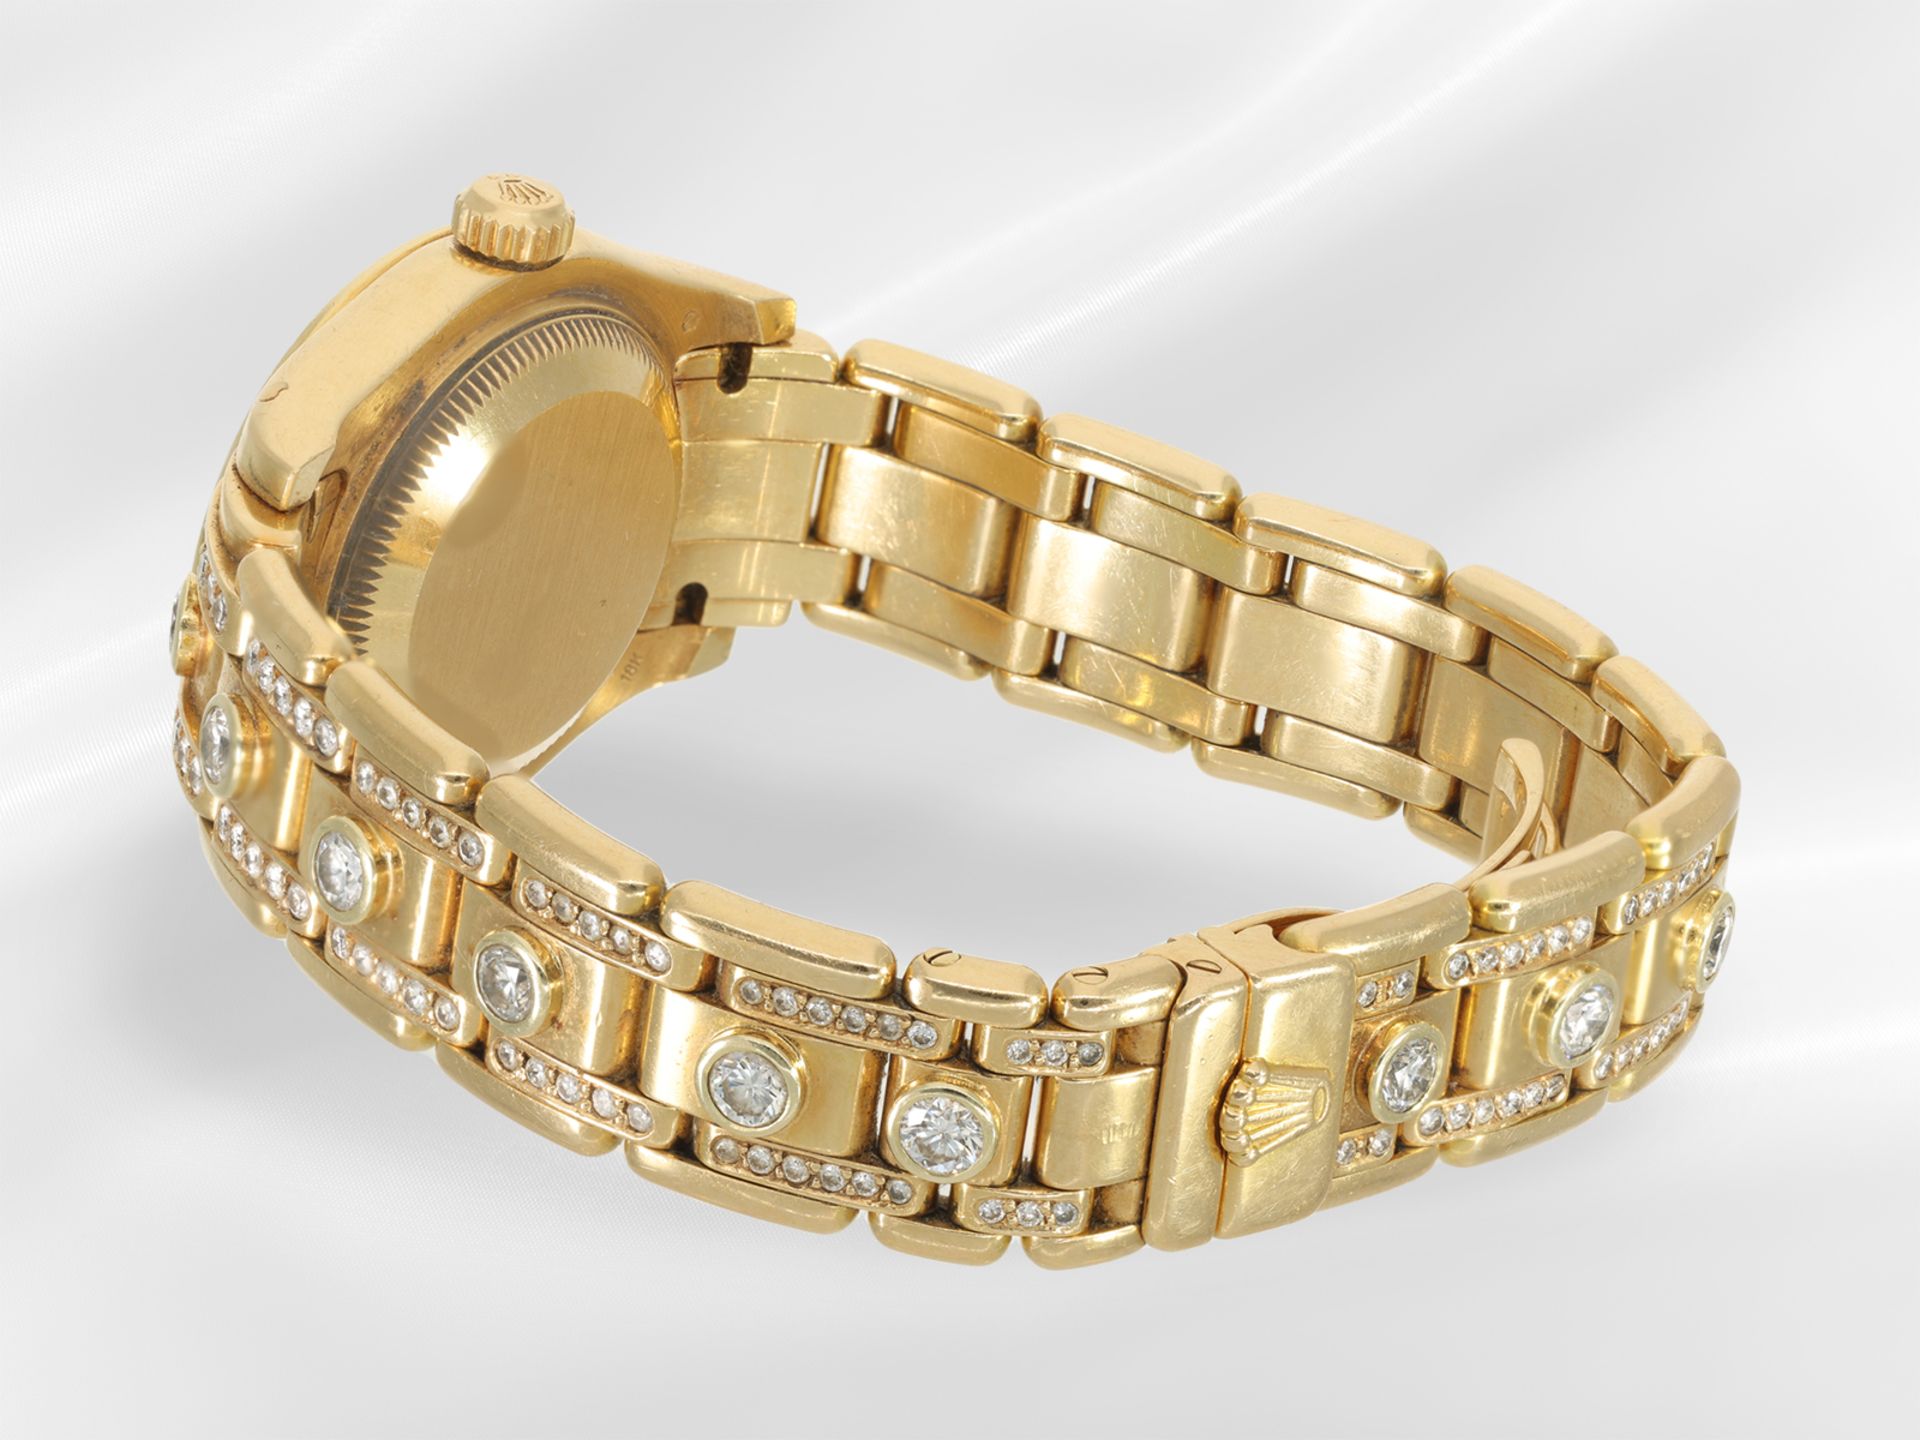 Armbanduhr: gesuchte luxuriöse Damenuhr Rolex Pearlmaster 29 mit Brillantbesatz und Diamantzifferbla - Bild 5 aus 6